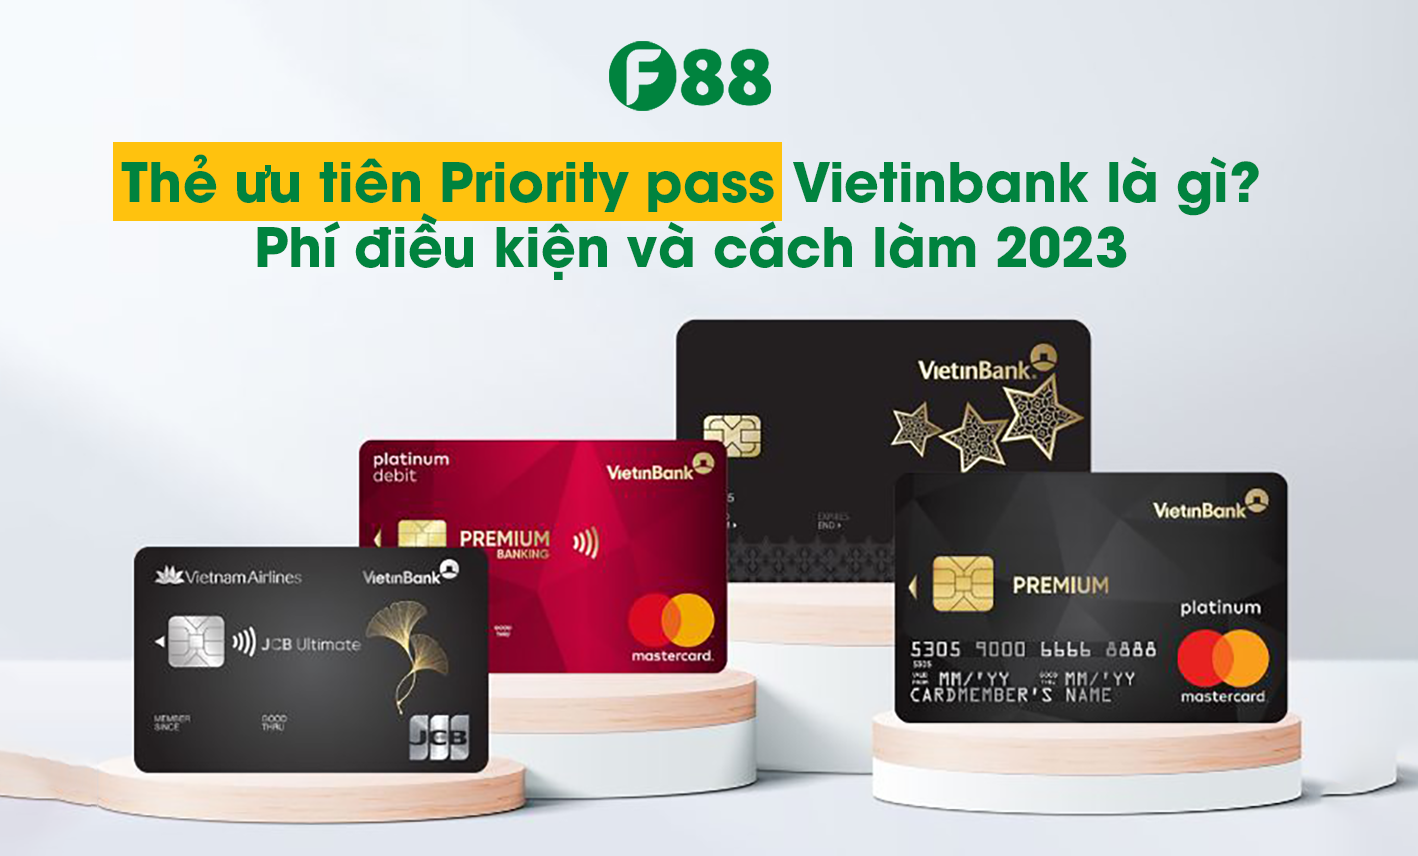 Thẻ ưu tiên Priority Pass Vietinbank là gì?